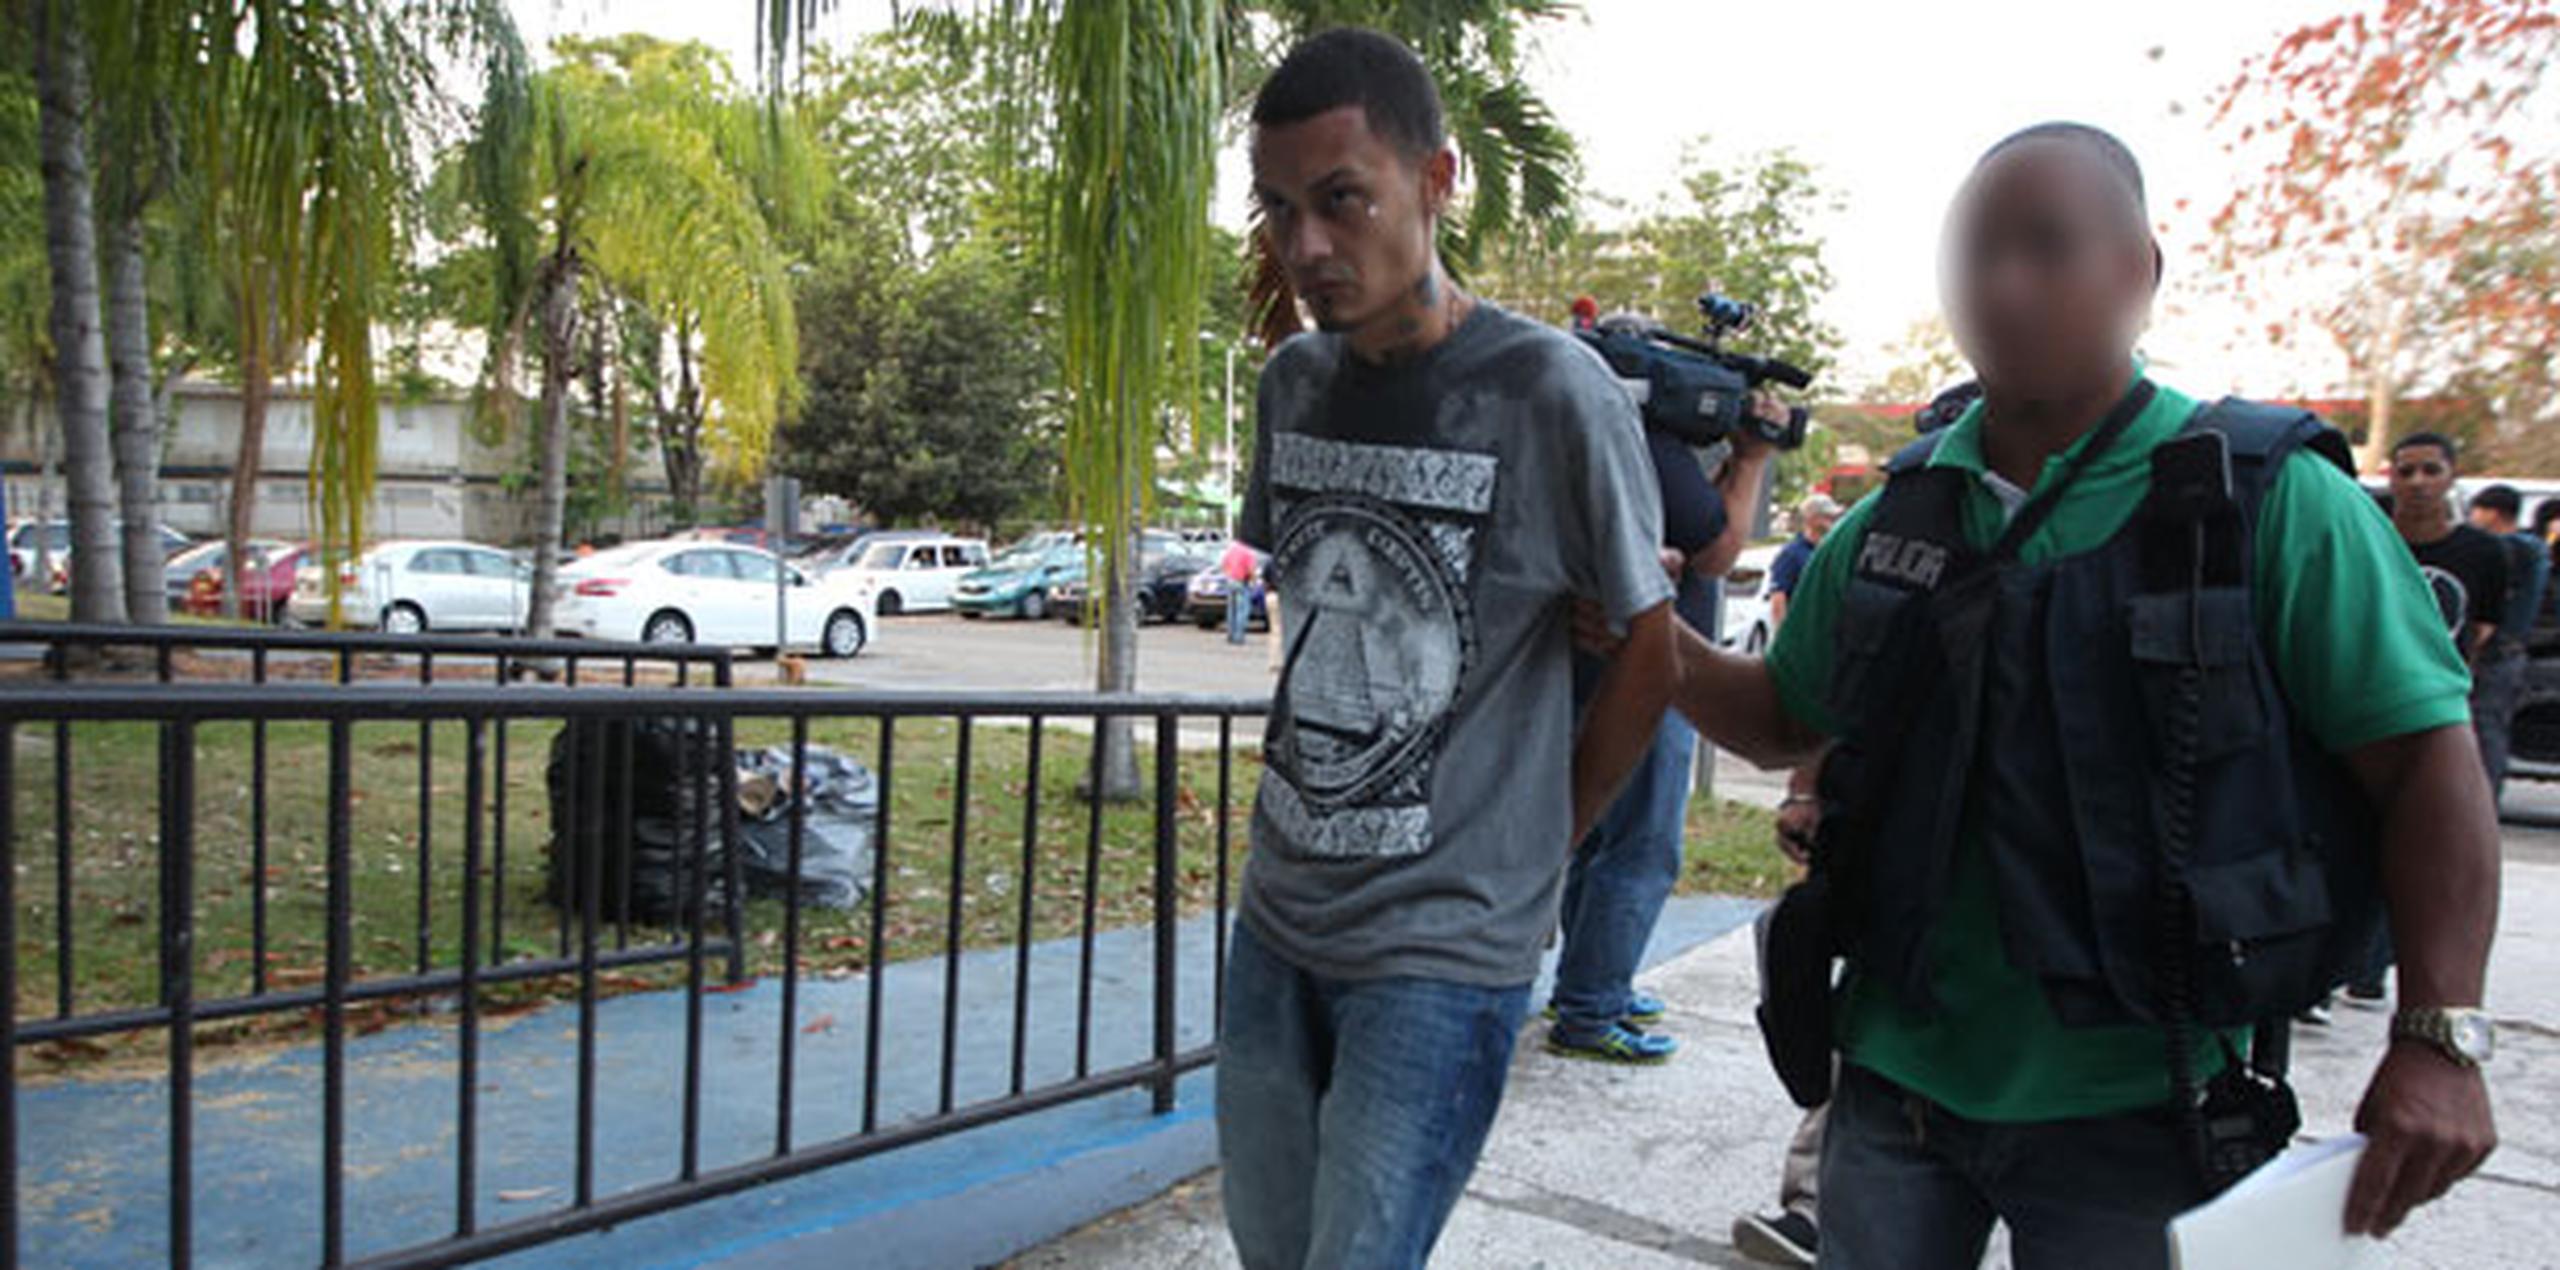 Los detenidos son trasladados a la Comandancia de Caguas para ser procesados previo a la radicación de cargos. (alex.figueroa@gfrmedia.com)